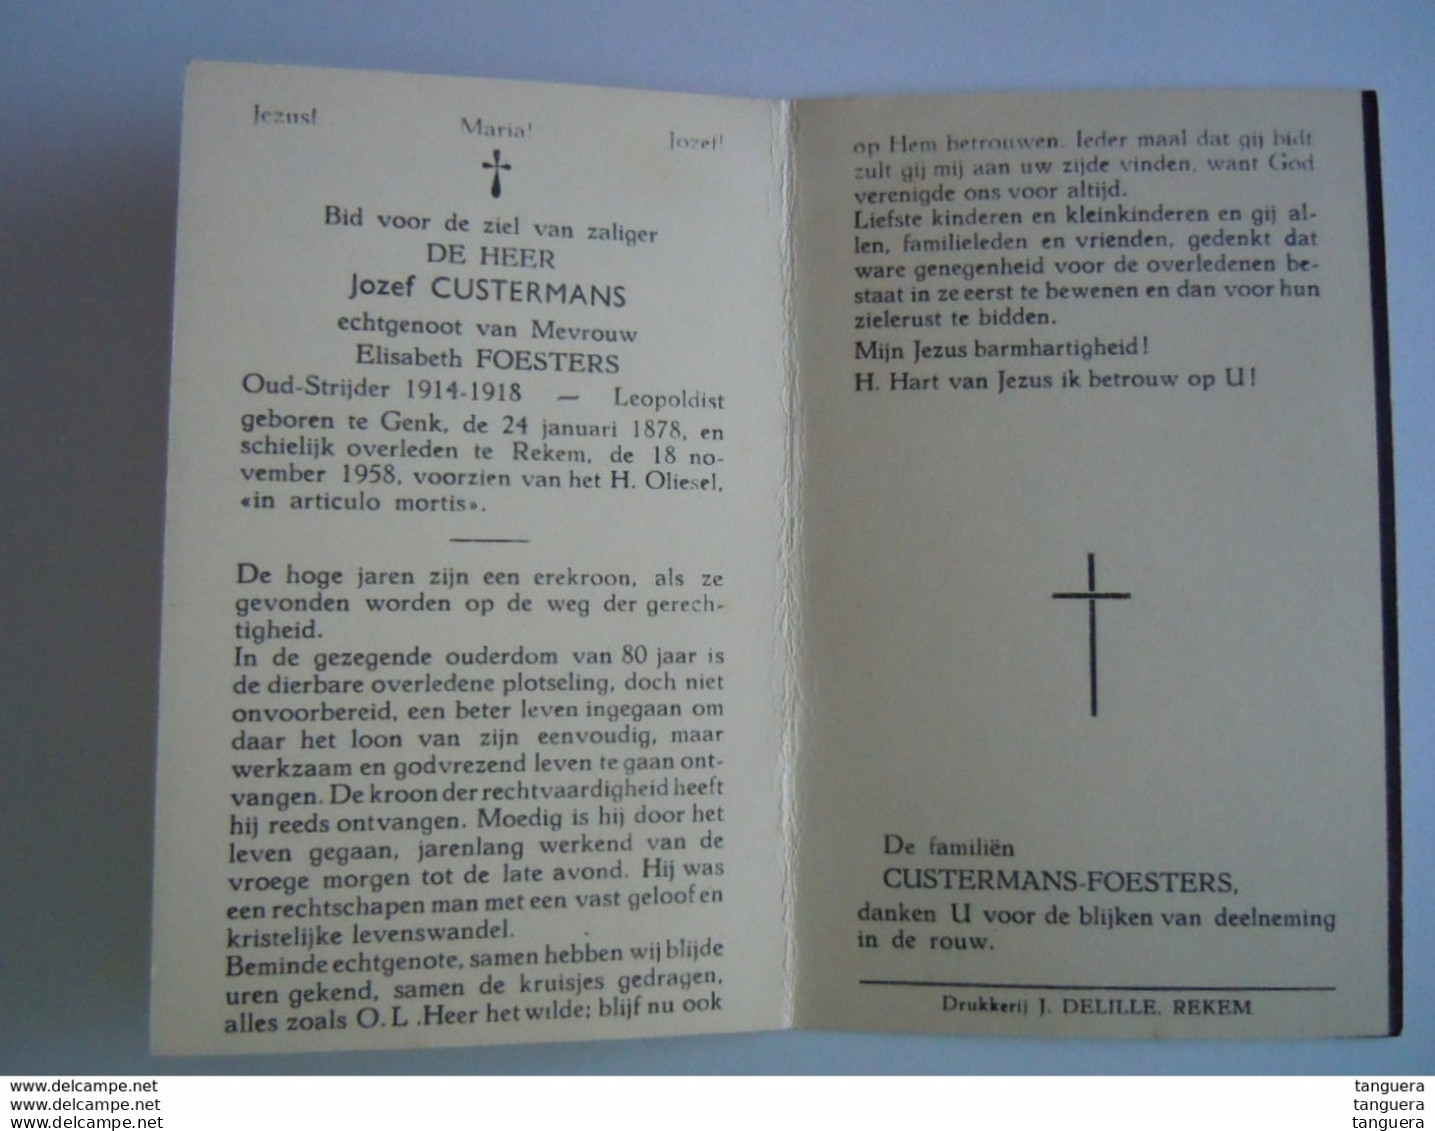 Doodsprentje Jozef Custermans Genk 1878 Rekem 1958 Oudstrijder 1914-18 Leopoldist Echt Elisabeth Foesters - Devotion Images